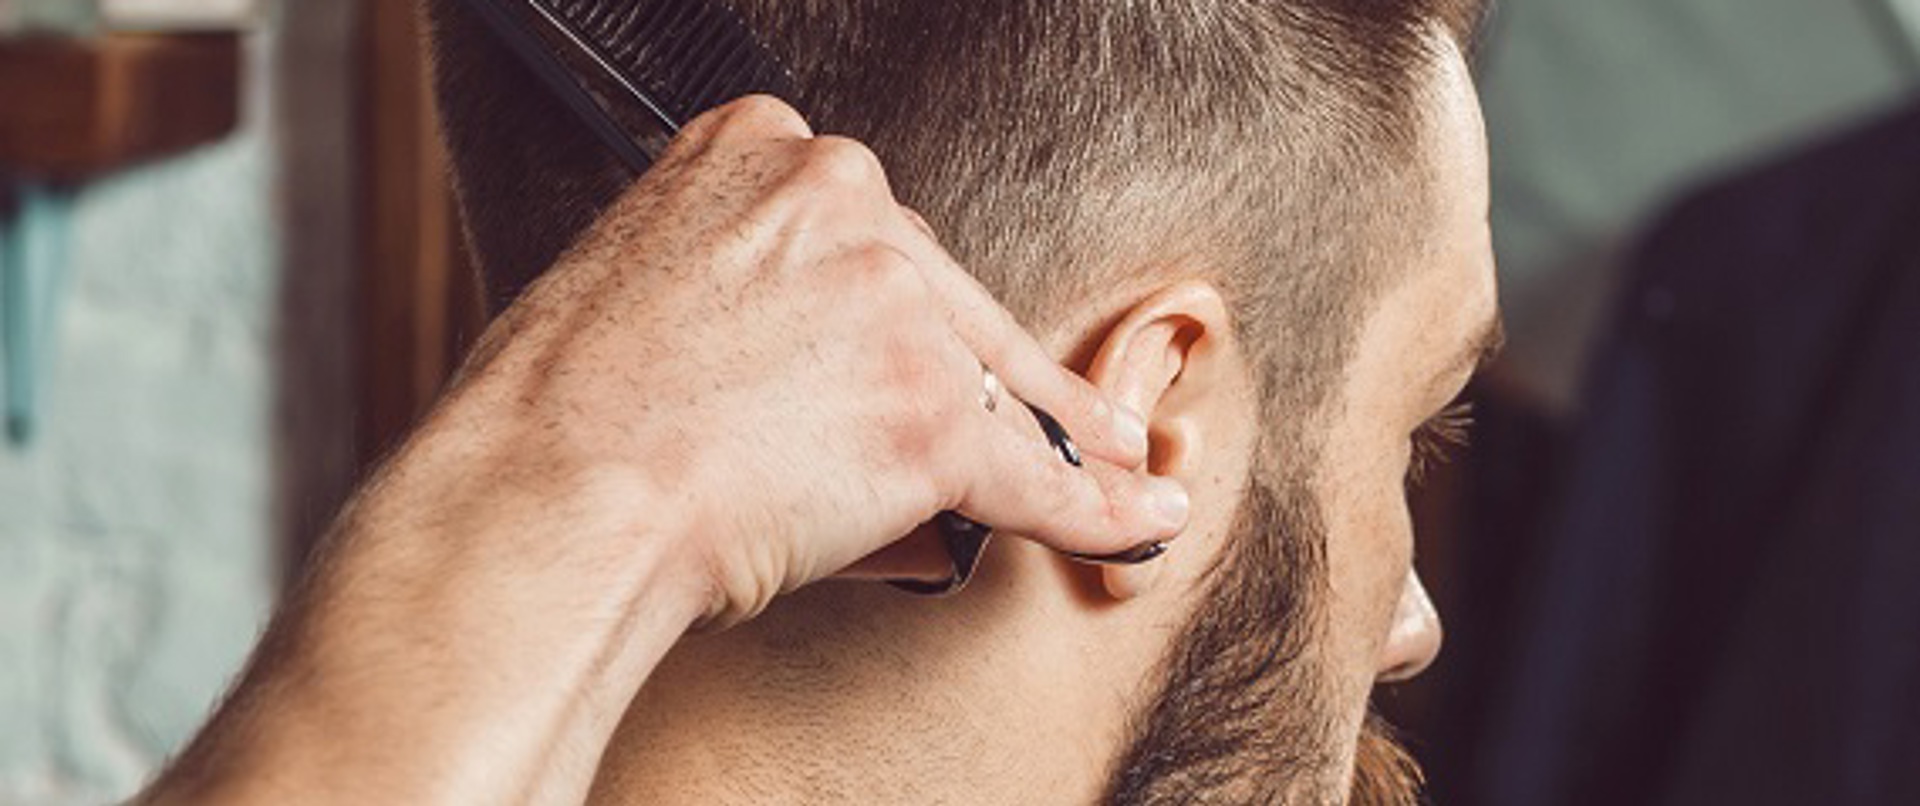 Erkeklere özel: Saçı sık sık tıraş etmek, kazıtmak saç tellerini kalınlaştırır mı?